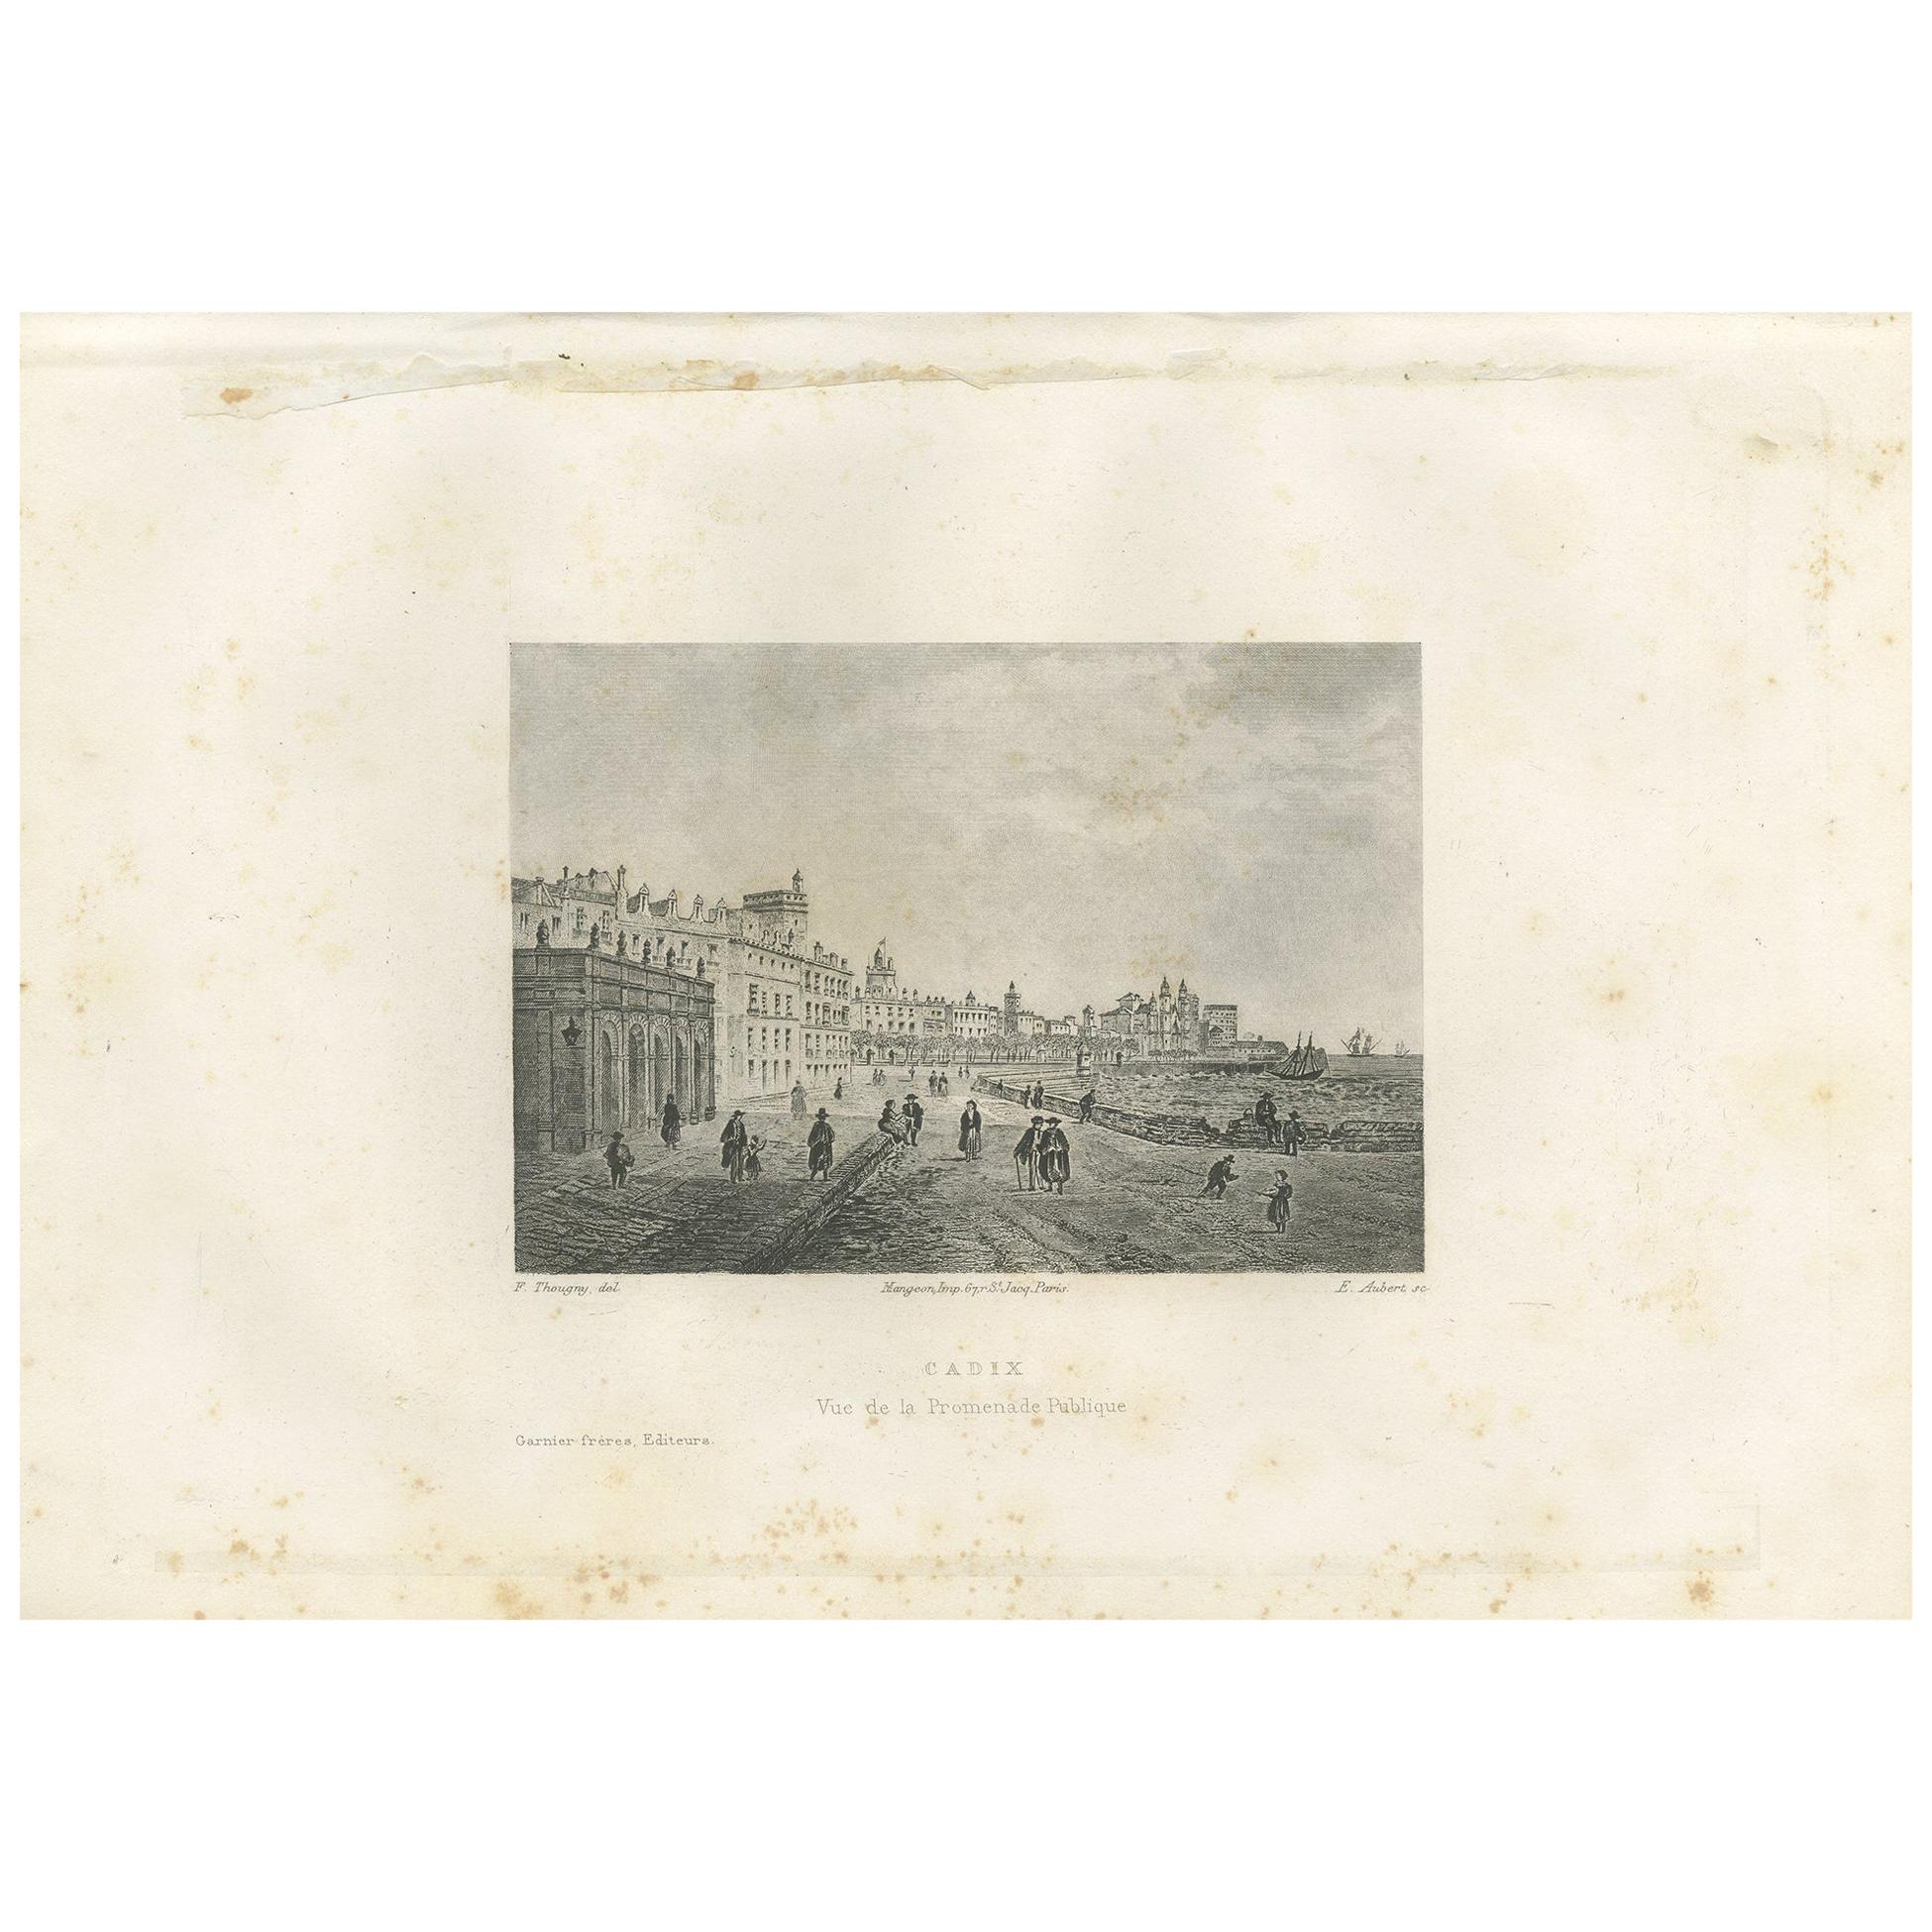 Antique Print of the City of Cádiz by Grégoire '1883'